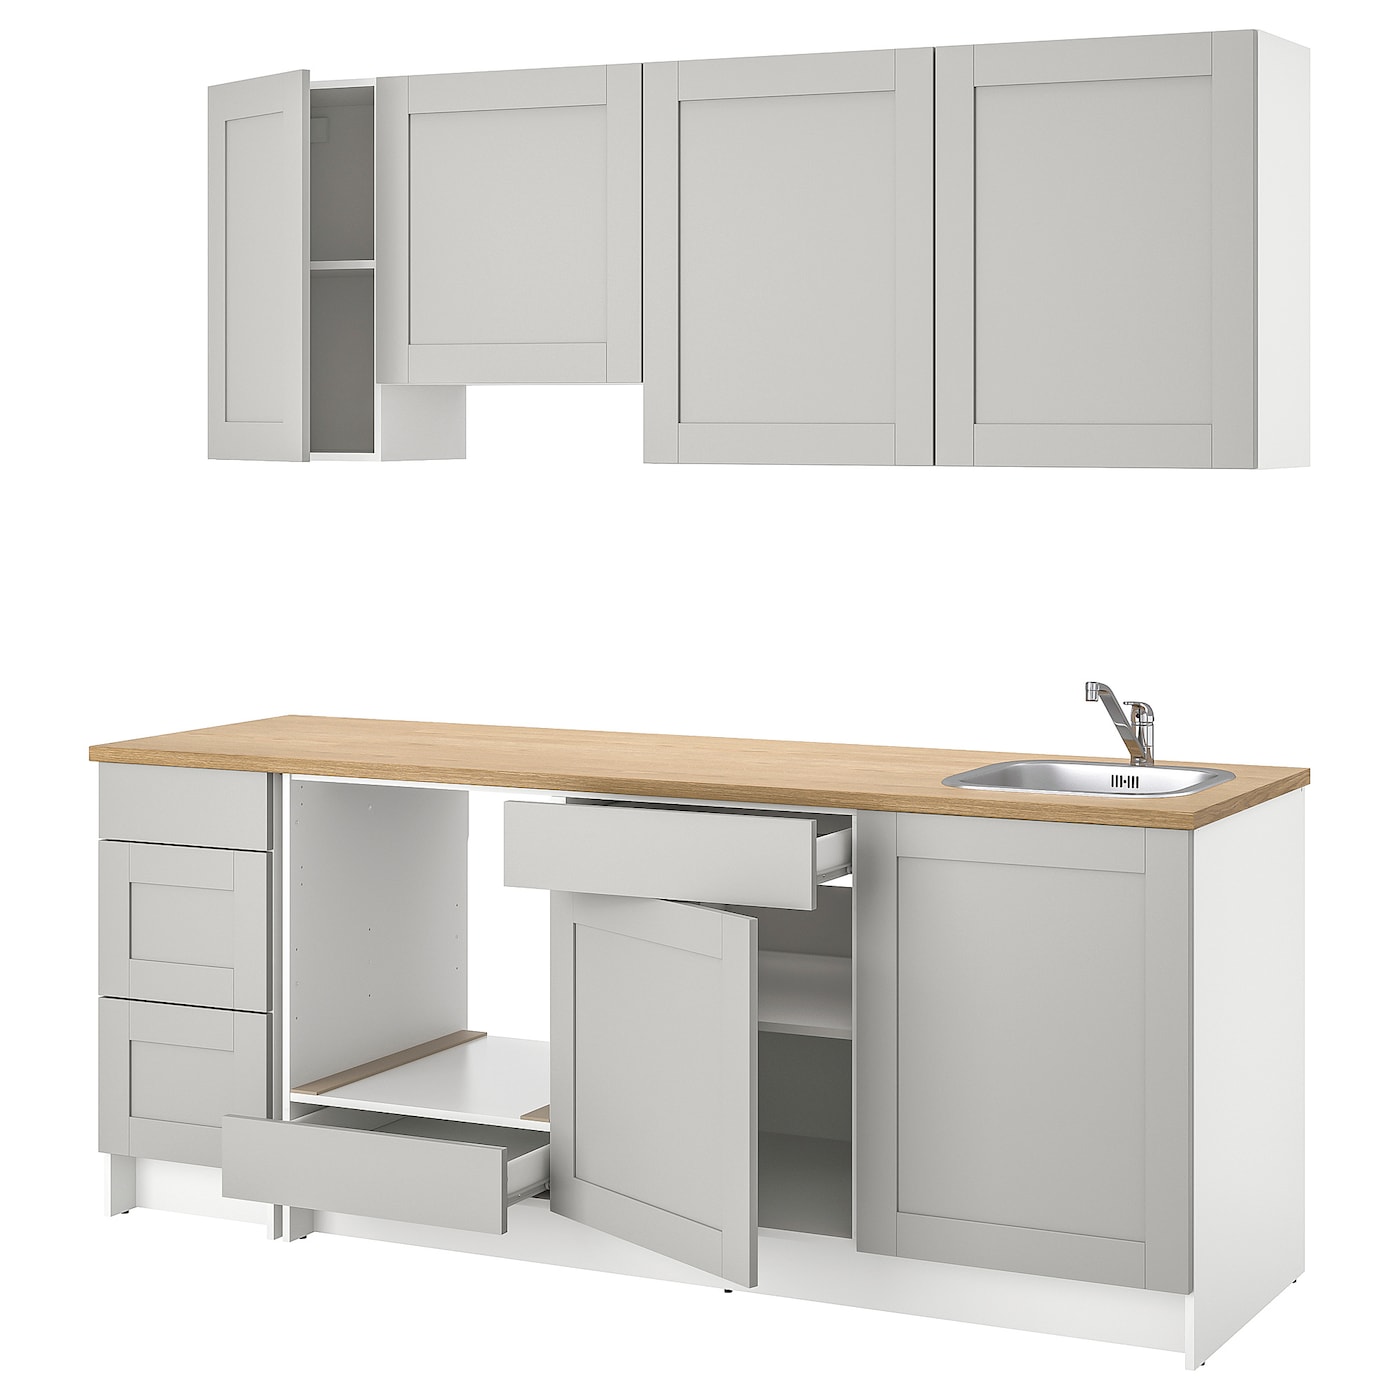 Кухонная комбинация для хранения вещей - KNOXHULT IKEA/ КНОКСХУЛЬТ ИКЕА, 220х61х220 см, бежевый/серый